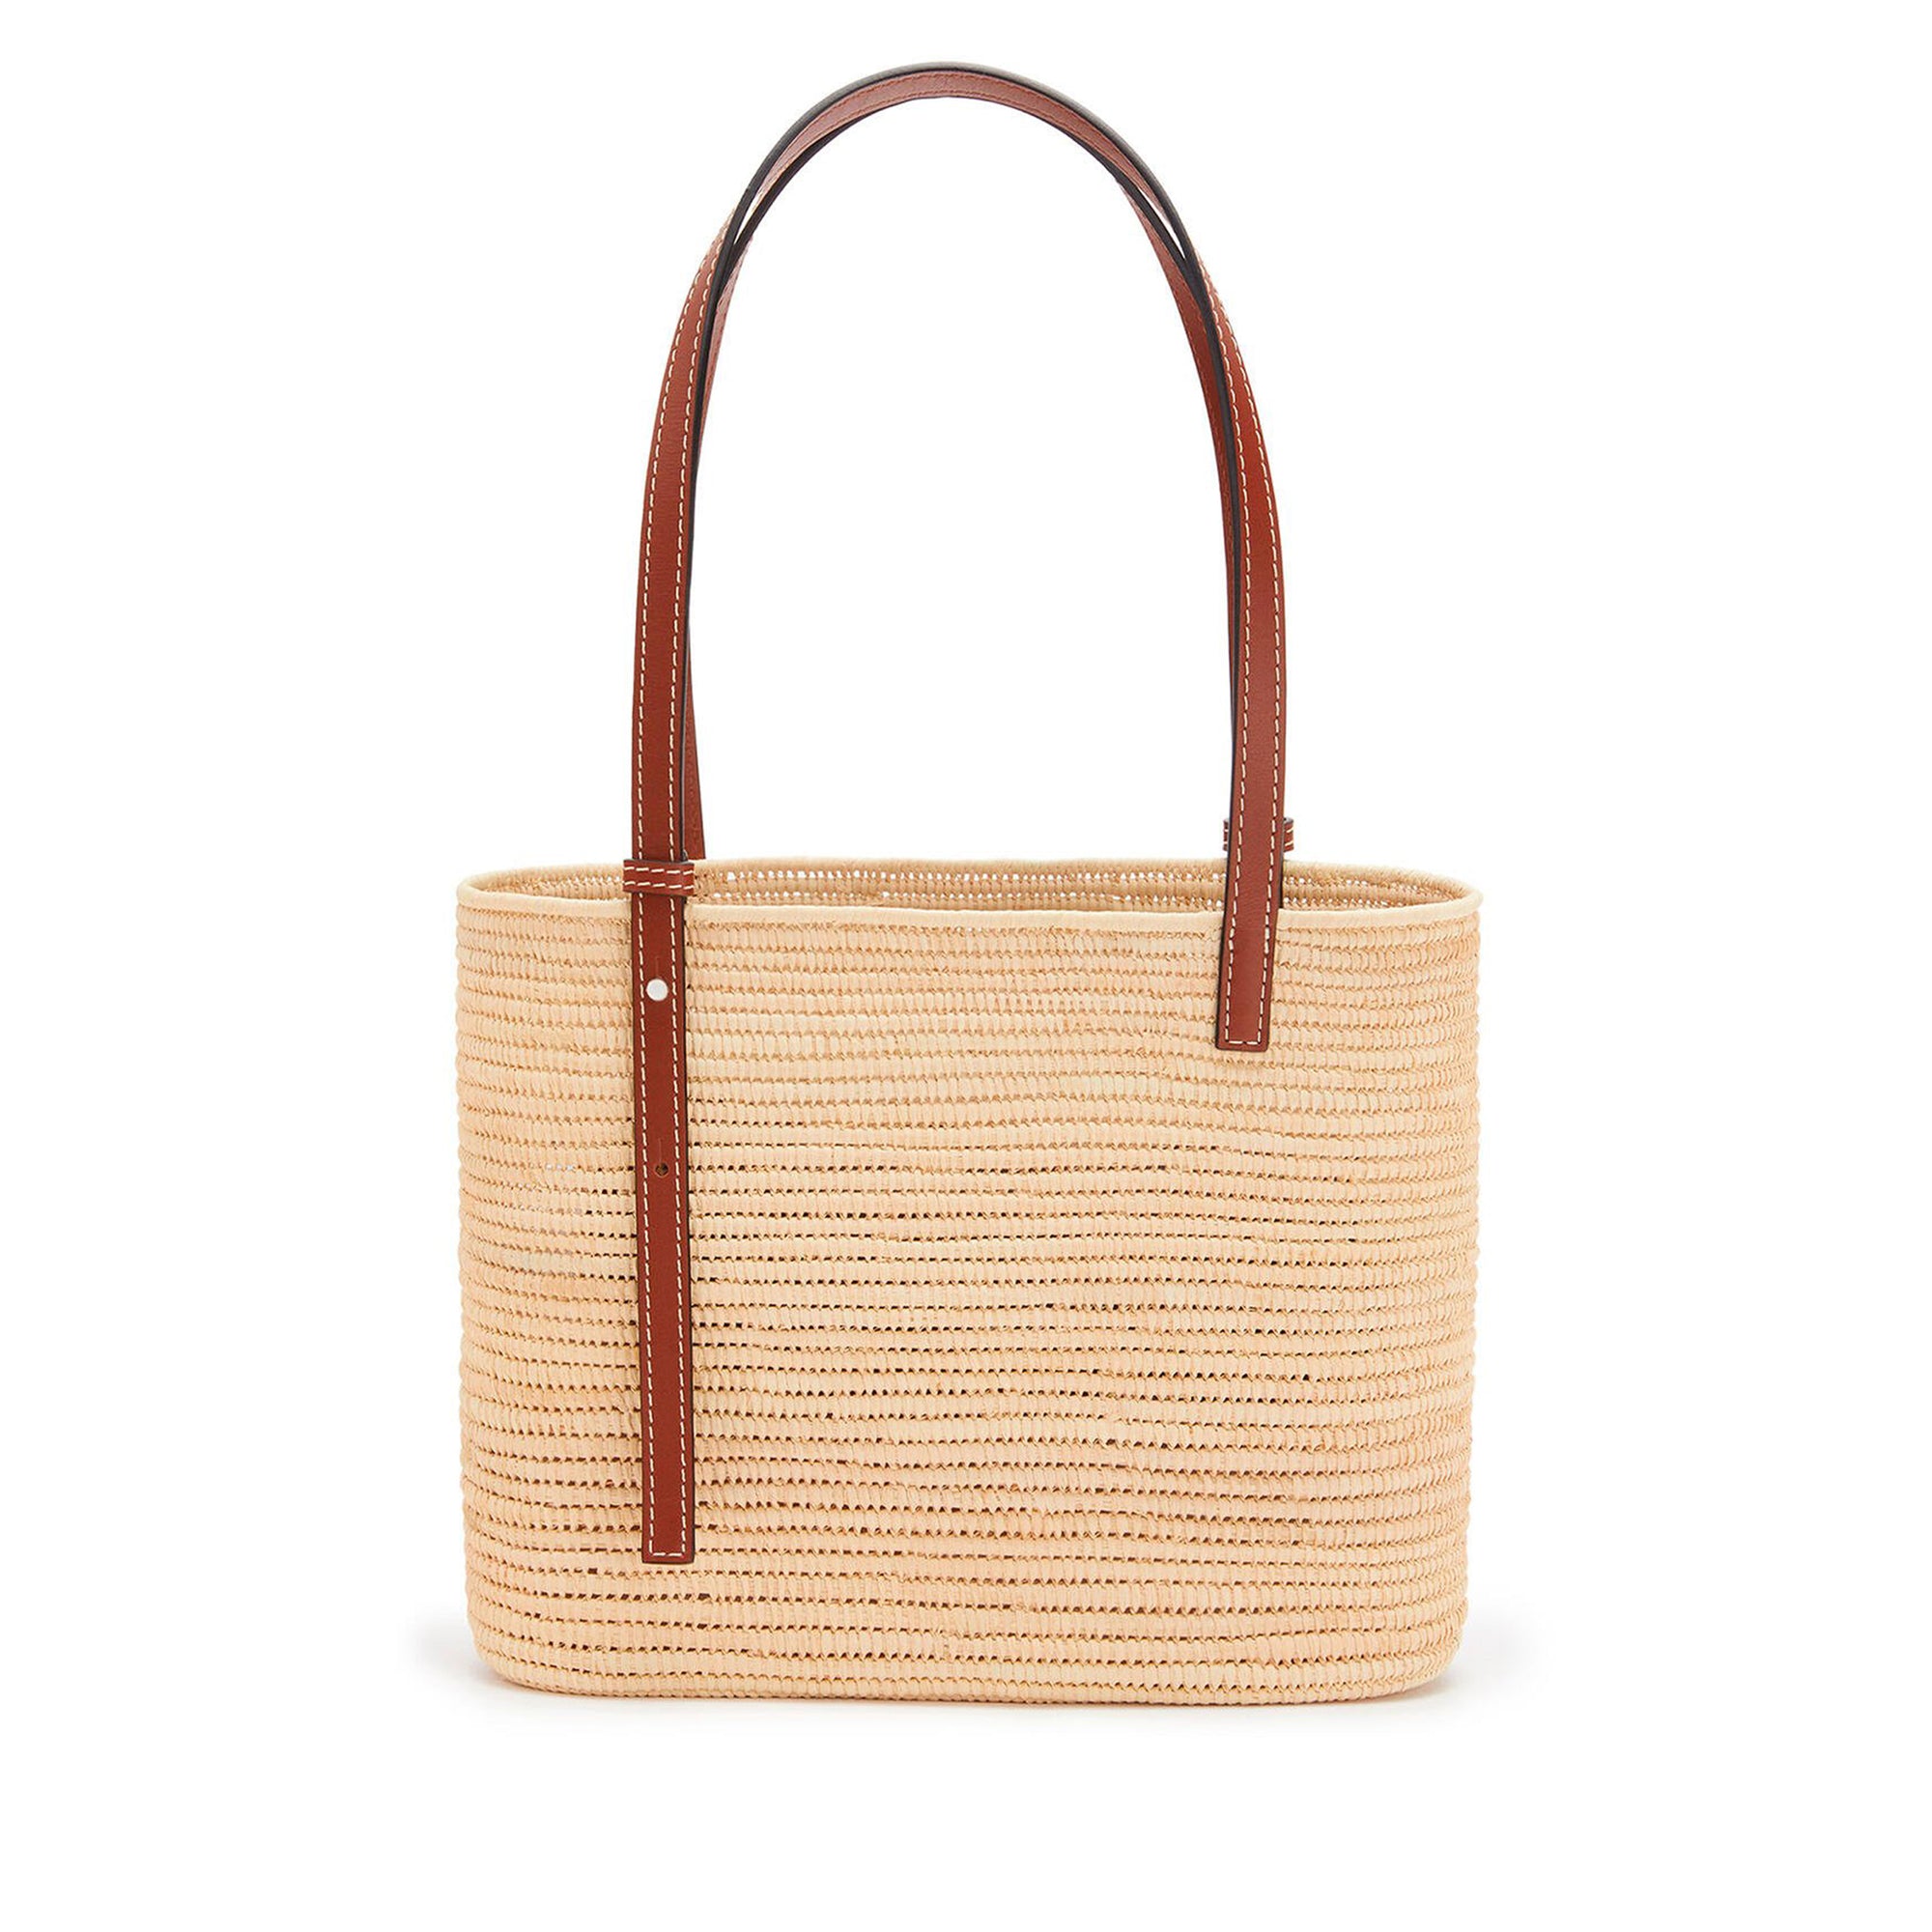 Loewe - Women’s Square Basket Small Bag - (Natural/Pecan) view 3